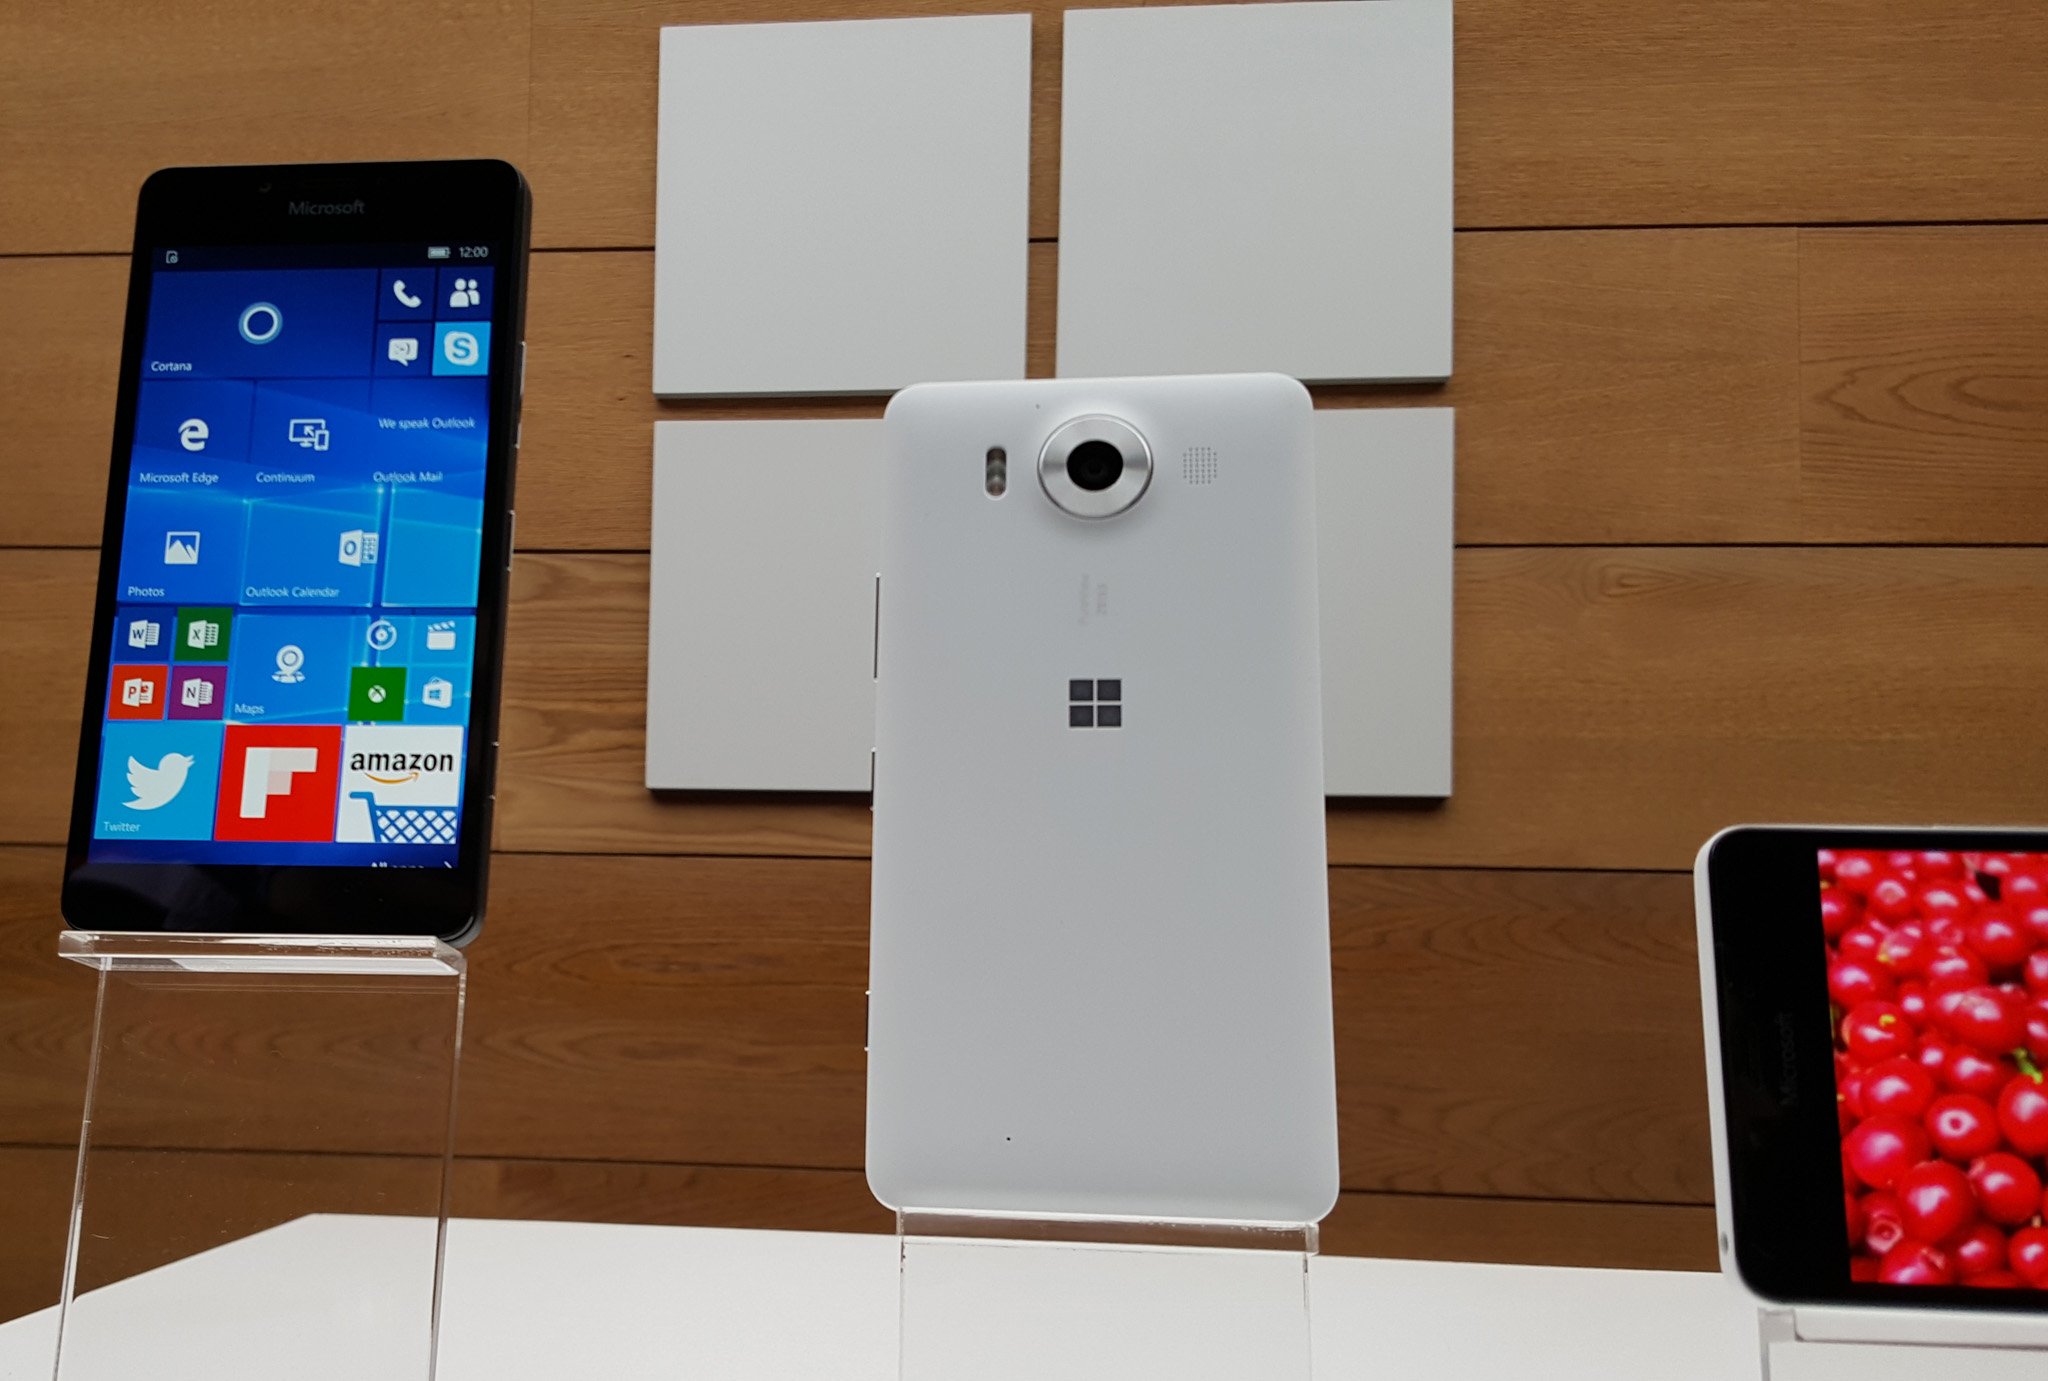 Galería: Hands-on de los Lumia 950 y Lumia 950 XL